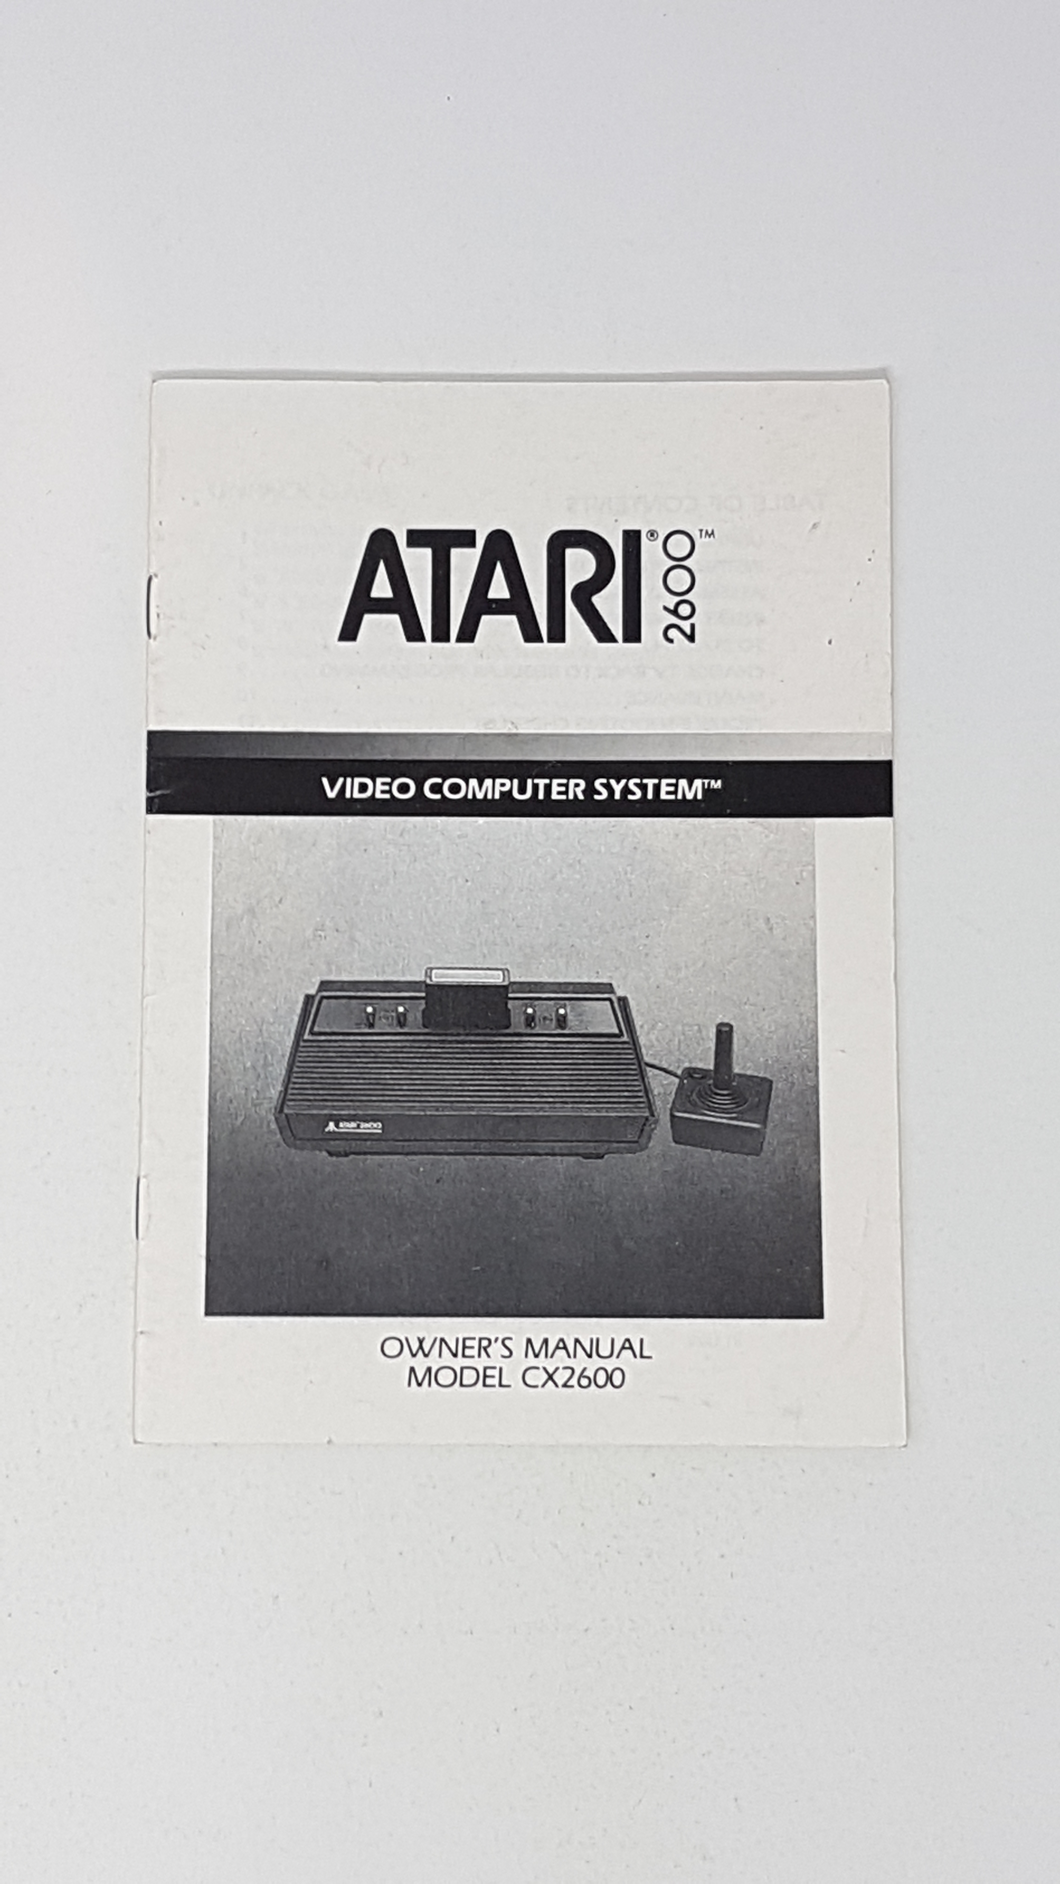 Owner's Manual model CX2600 - Atari 2600